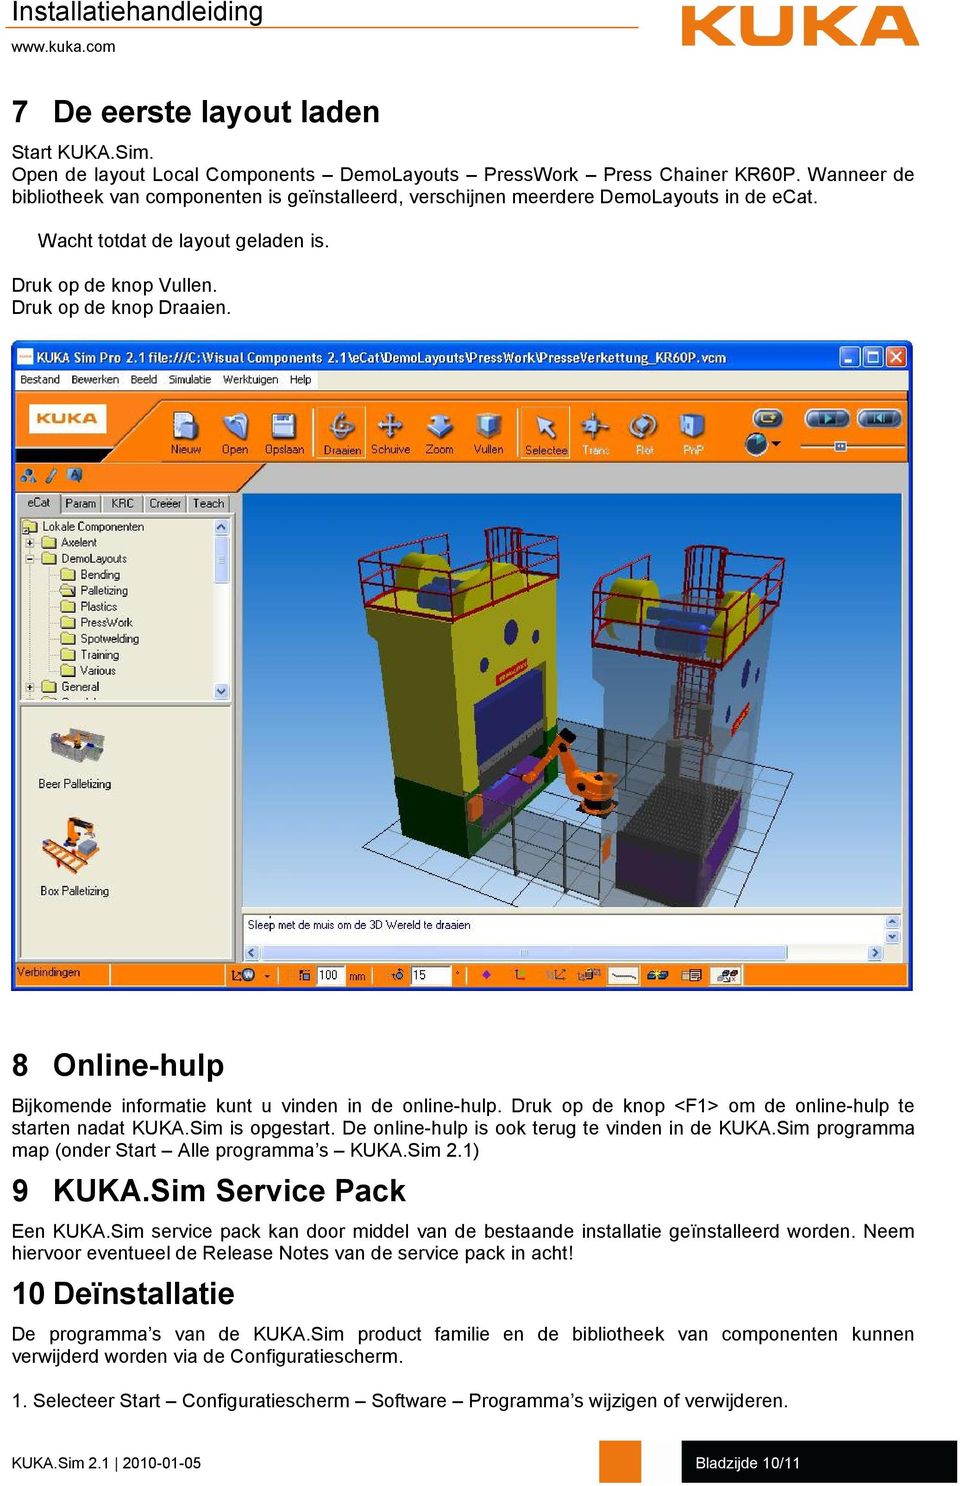 8 Online-hulp Bijkomende informatie kunt u vinden in de online-hulp. Druk op de knop <F1> om de online-hulp te starten nadat KUKA.Sim is opgestart. De online-hulp is ook terug te vinden in de KUKA.